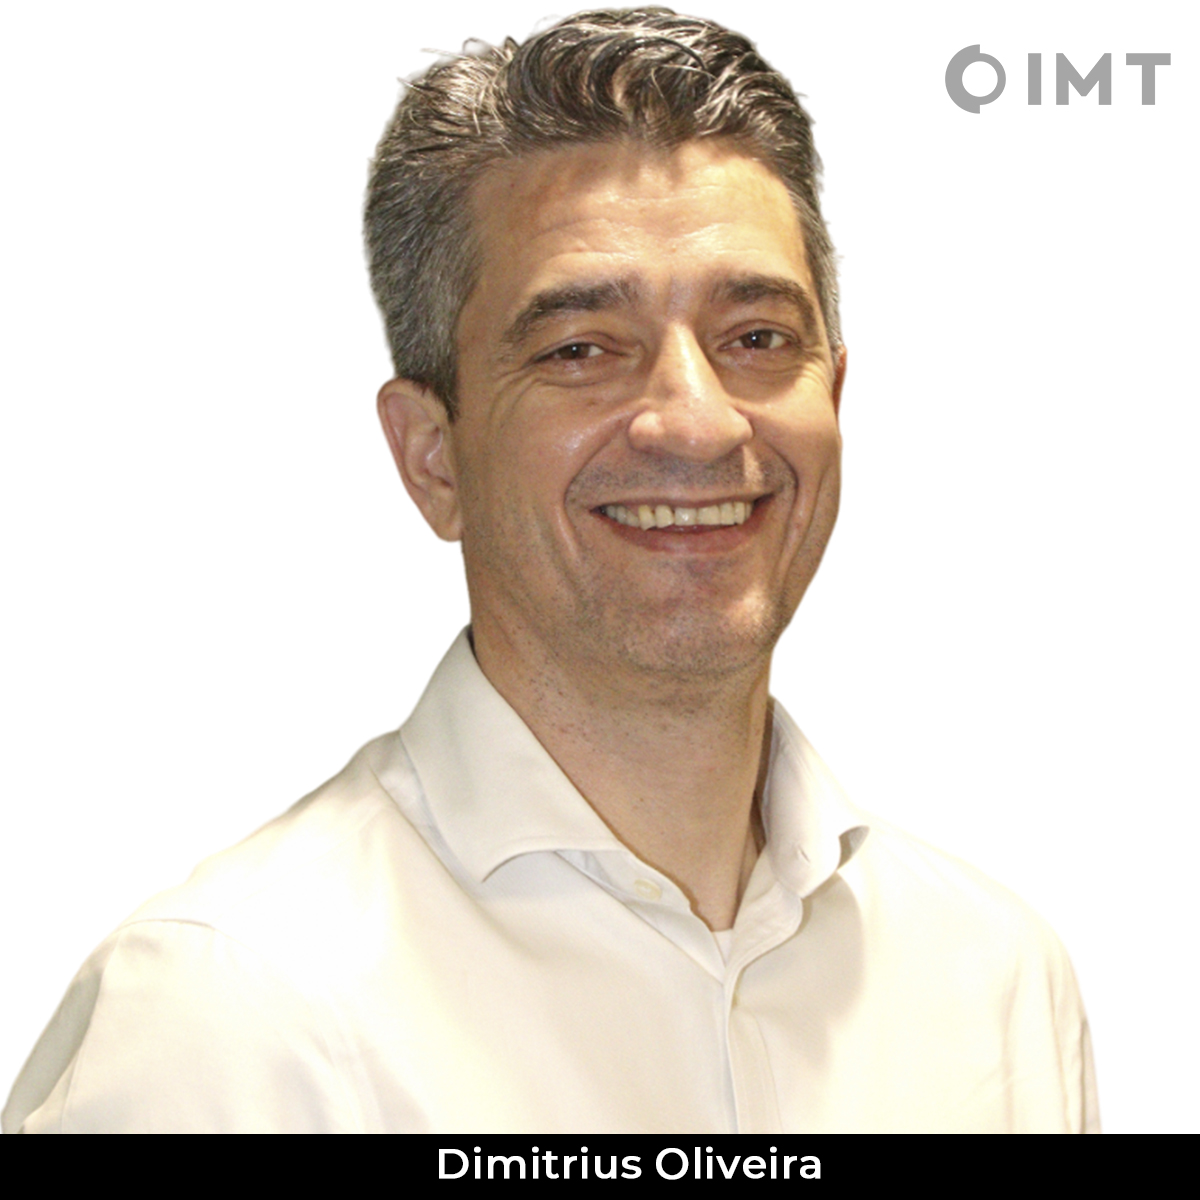 Dimitrius Oliveira